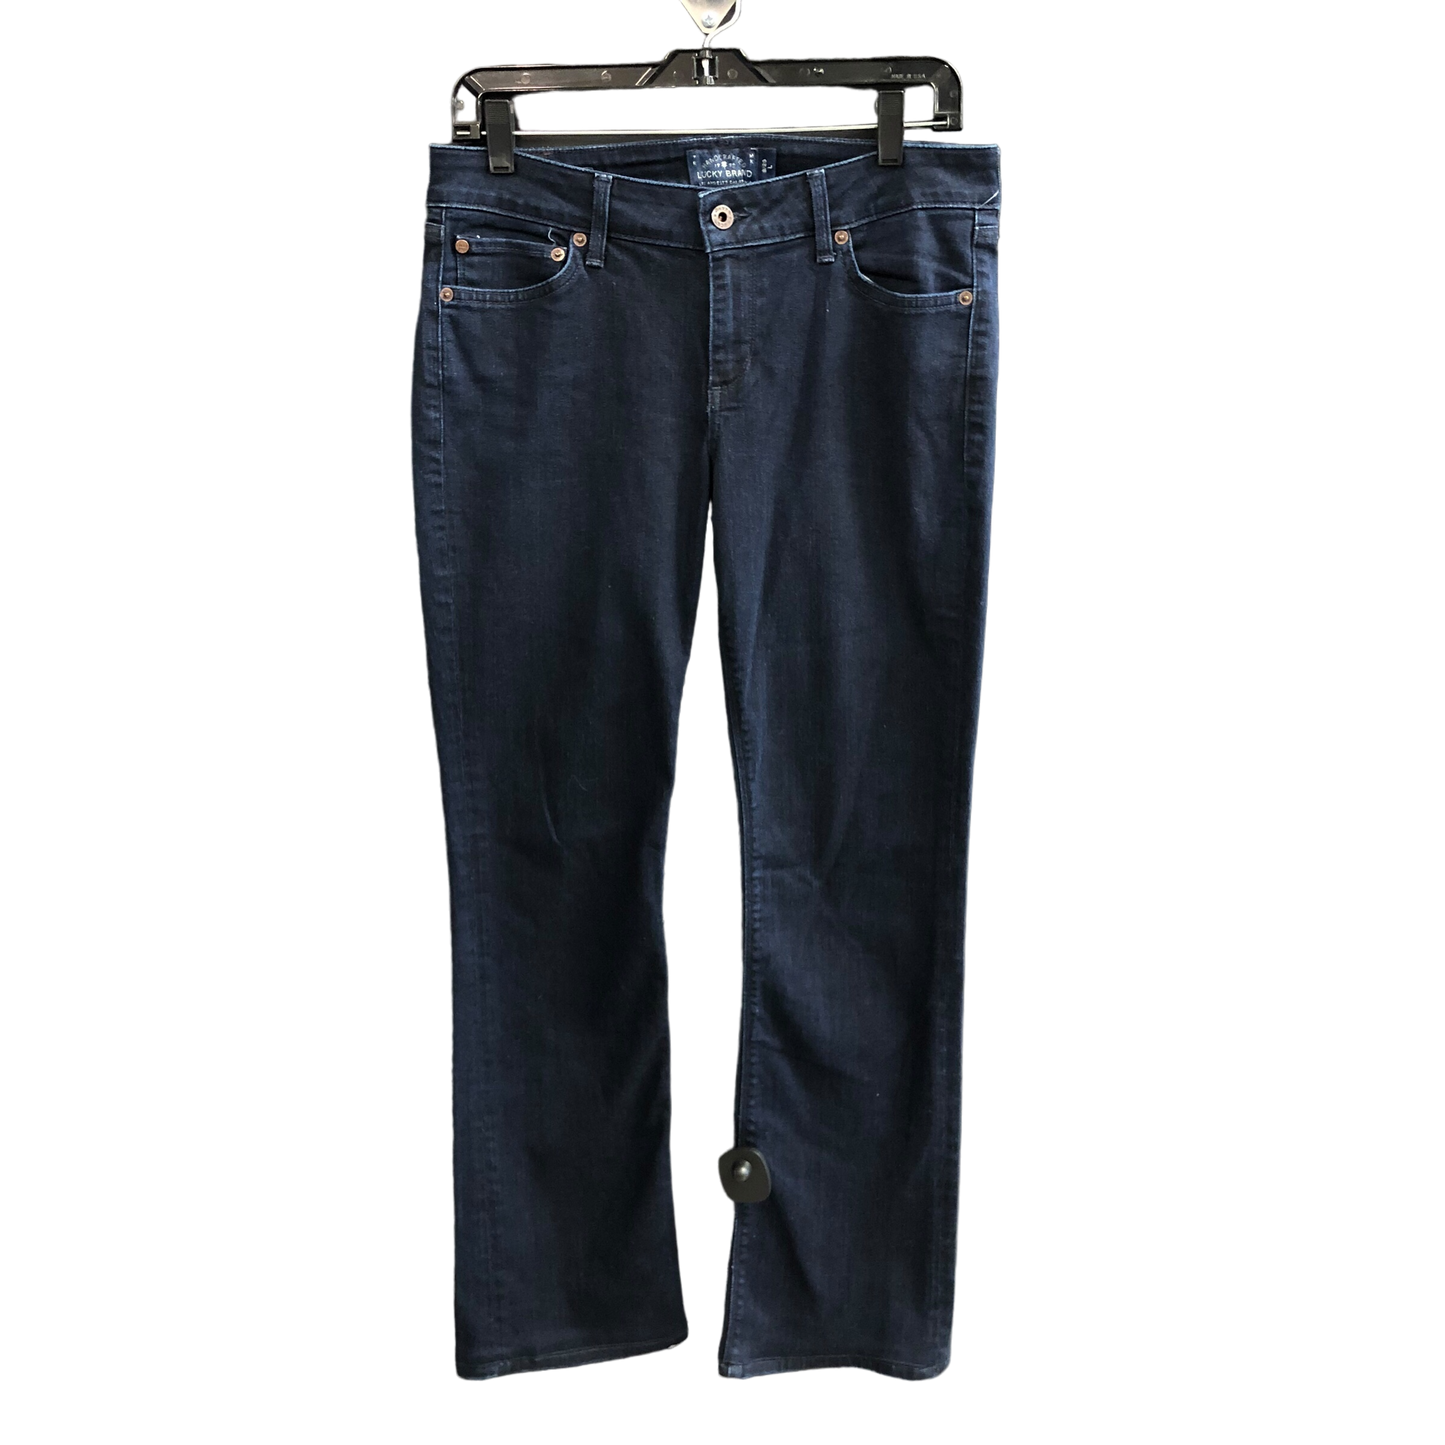 Blue Denim Jeans Boot Cut Lucky Brand, Size 8